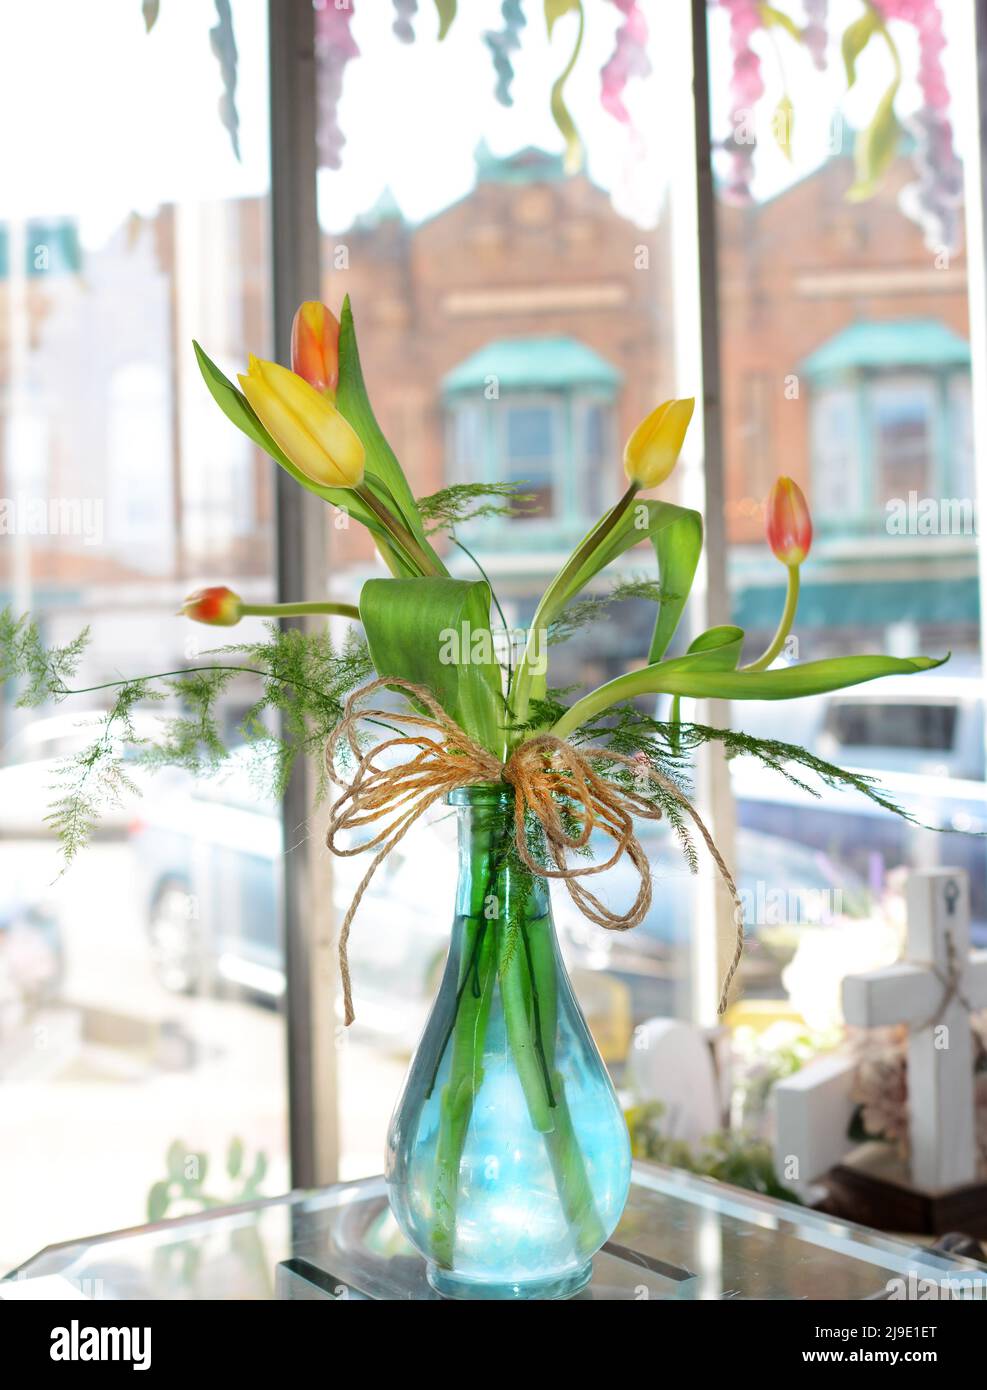 Des tulipes aux couleurs vives dans un joli vase bleu se trouvent dans une fenêtre ensoleillée. Banque D'Images